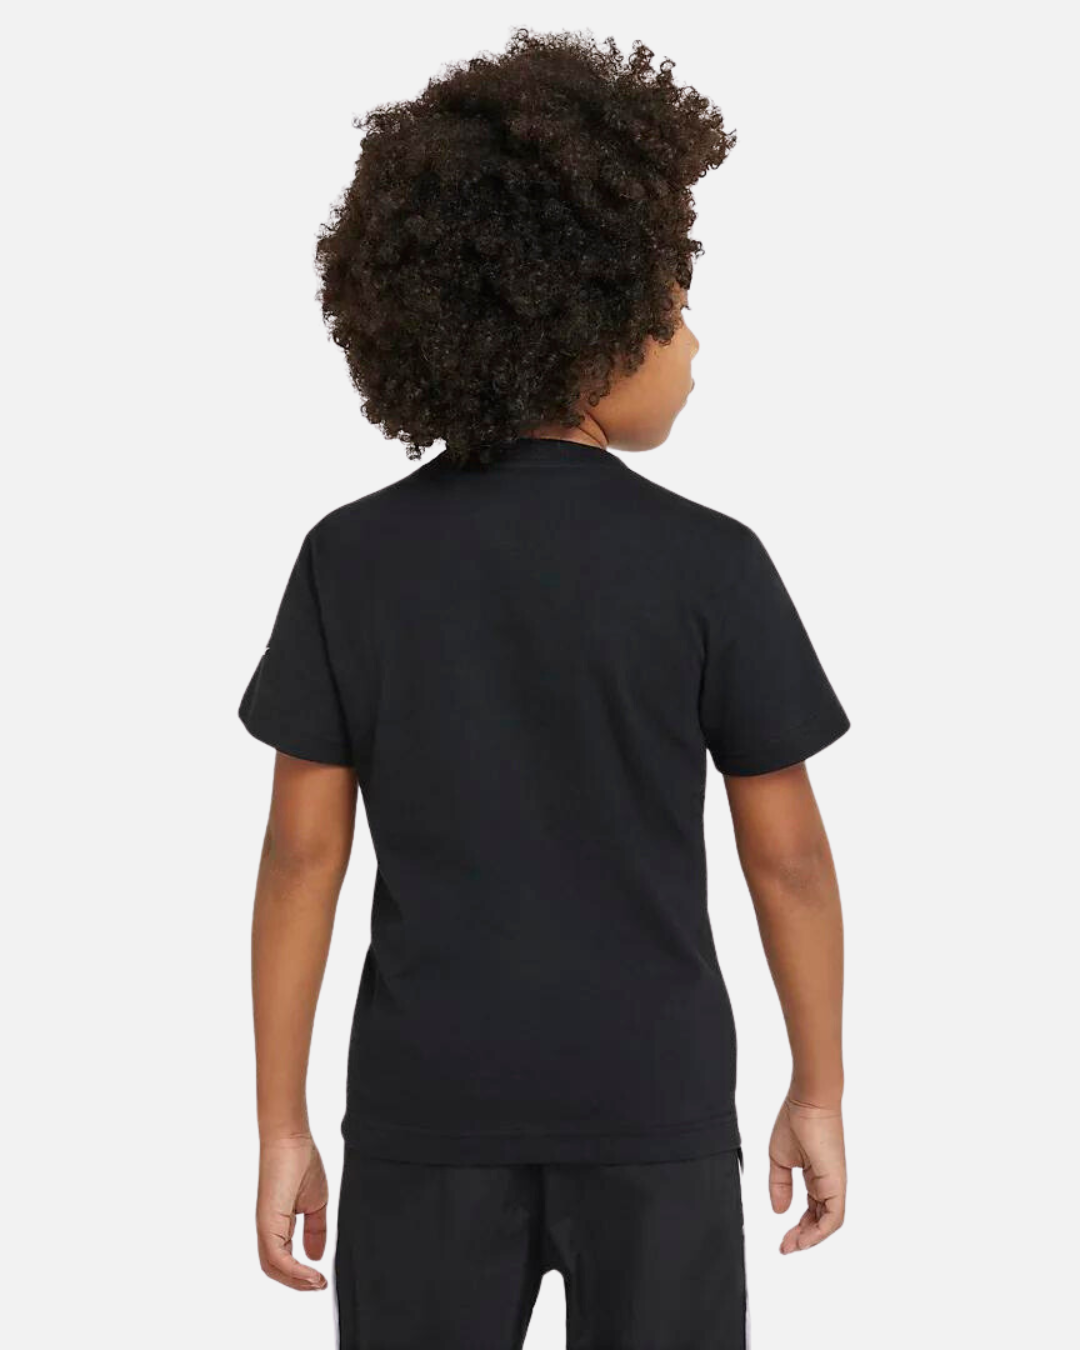 Nike Air Kinder T-Shirt - Schwarz